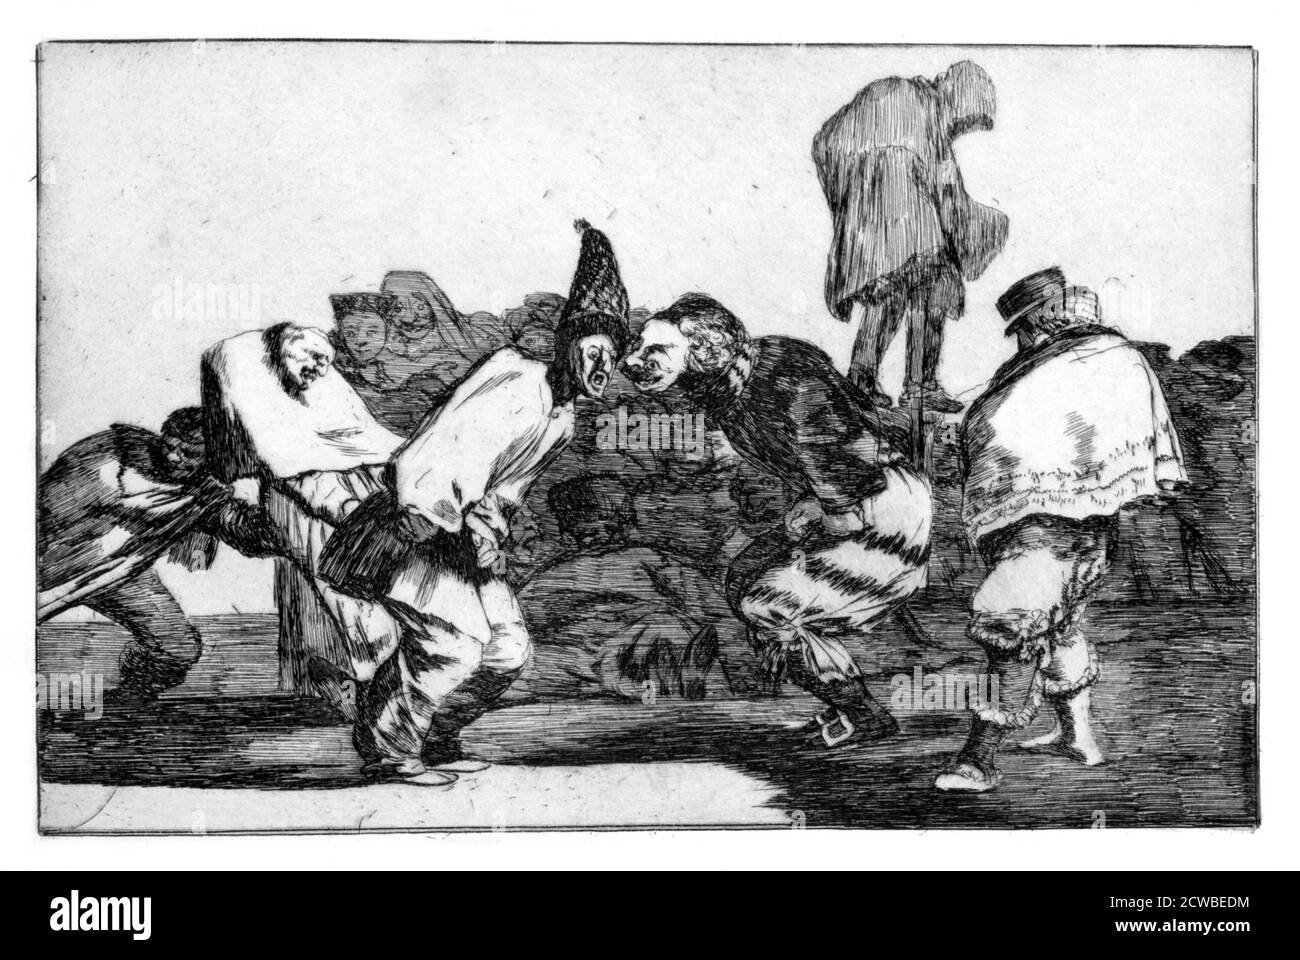 Carnival Fantasy', 1819-1823 Künstler: Francisco Goya. Tafel 14 der 'Sprüche', veröffentlicht 1864. 'Sprichwörter' ist ein Album mit zweiundzwanzig Drucken, das die letzte große Serie von Drucken von Francisco Goya ist. Stockfoto